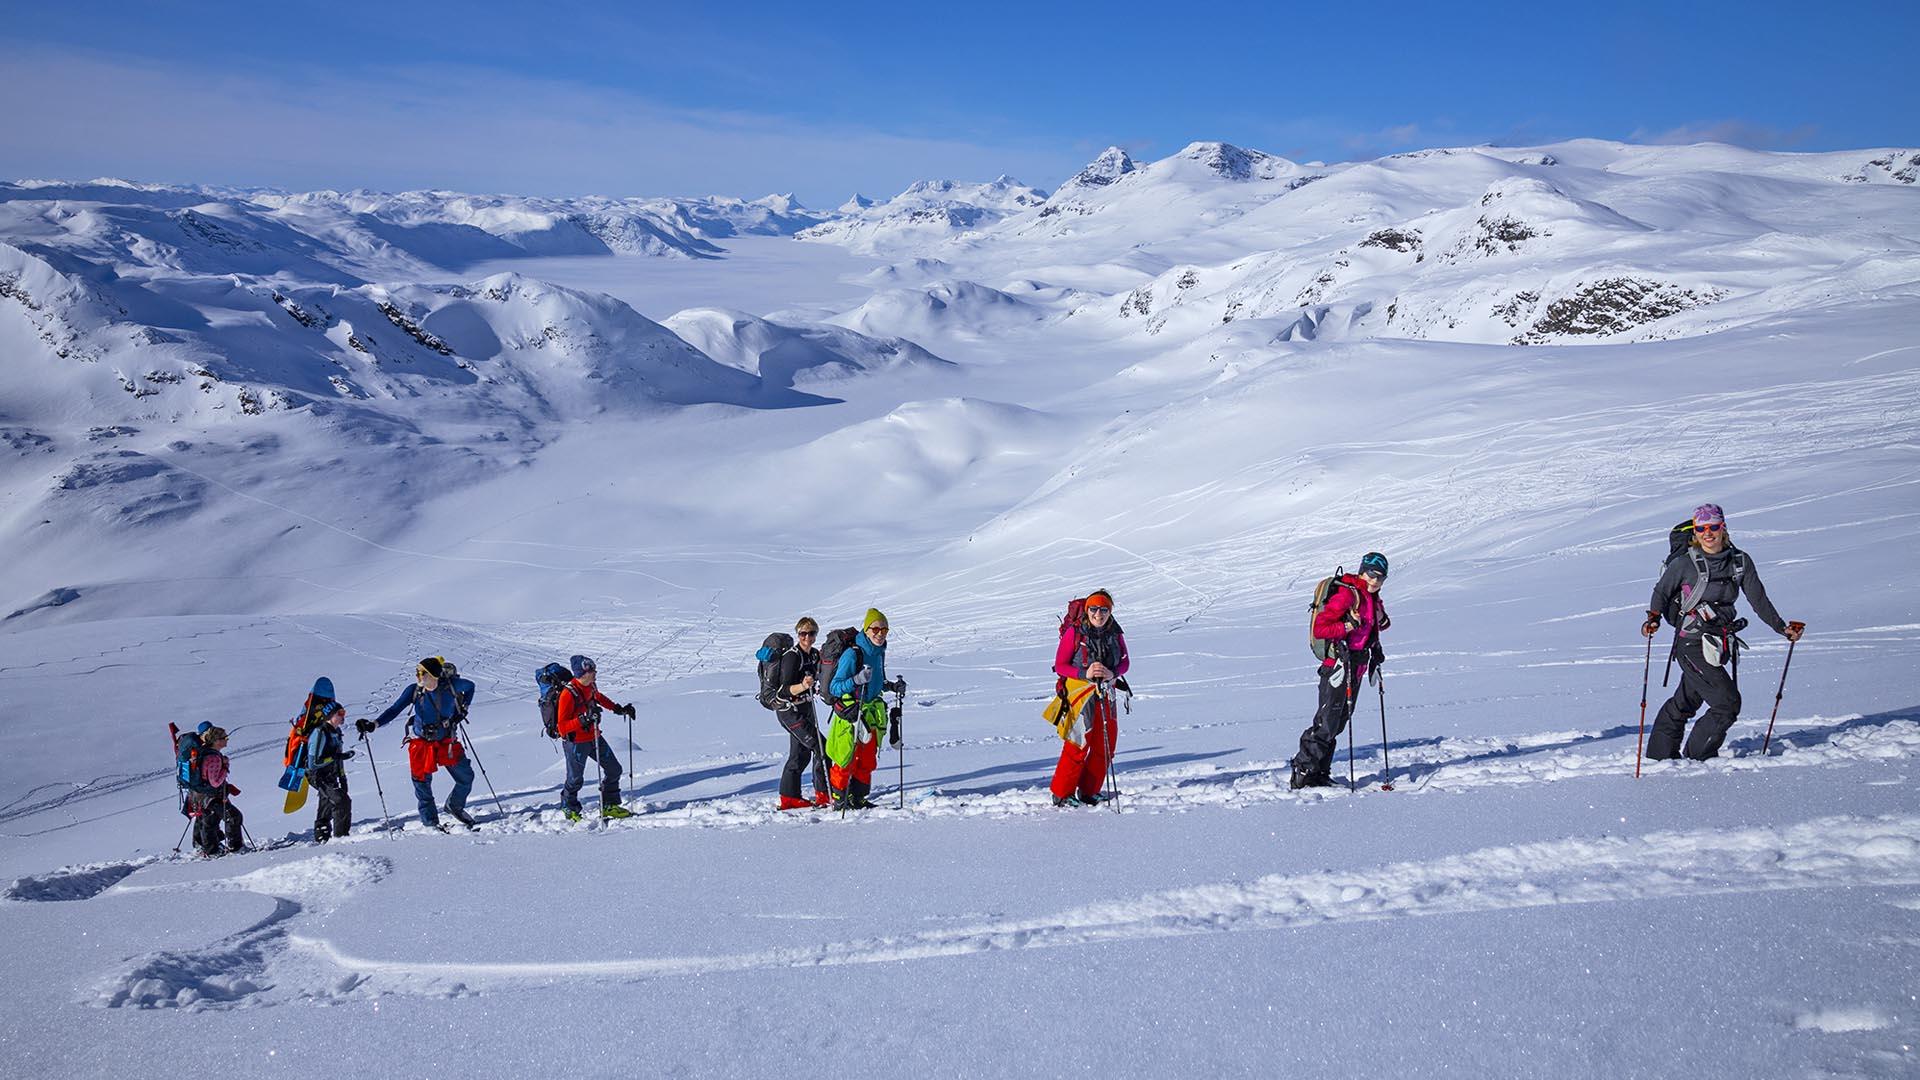 Følge på 9 personer på vei opp en fjellside på randoneeski. Snødekt fjellandskap i bakgrunnen.